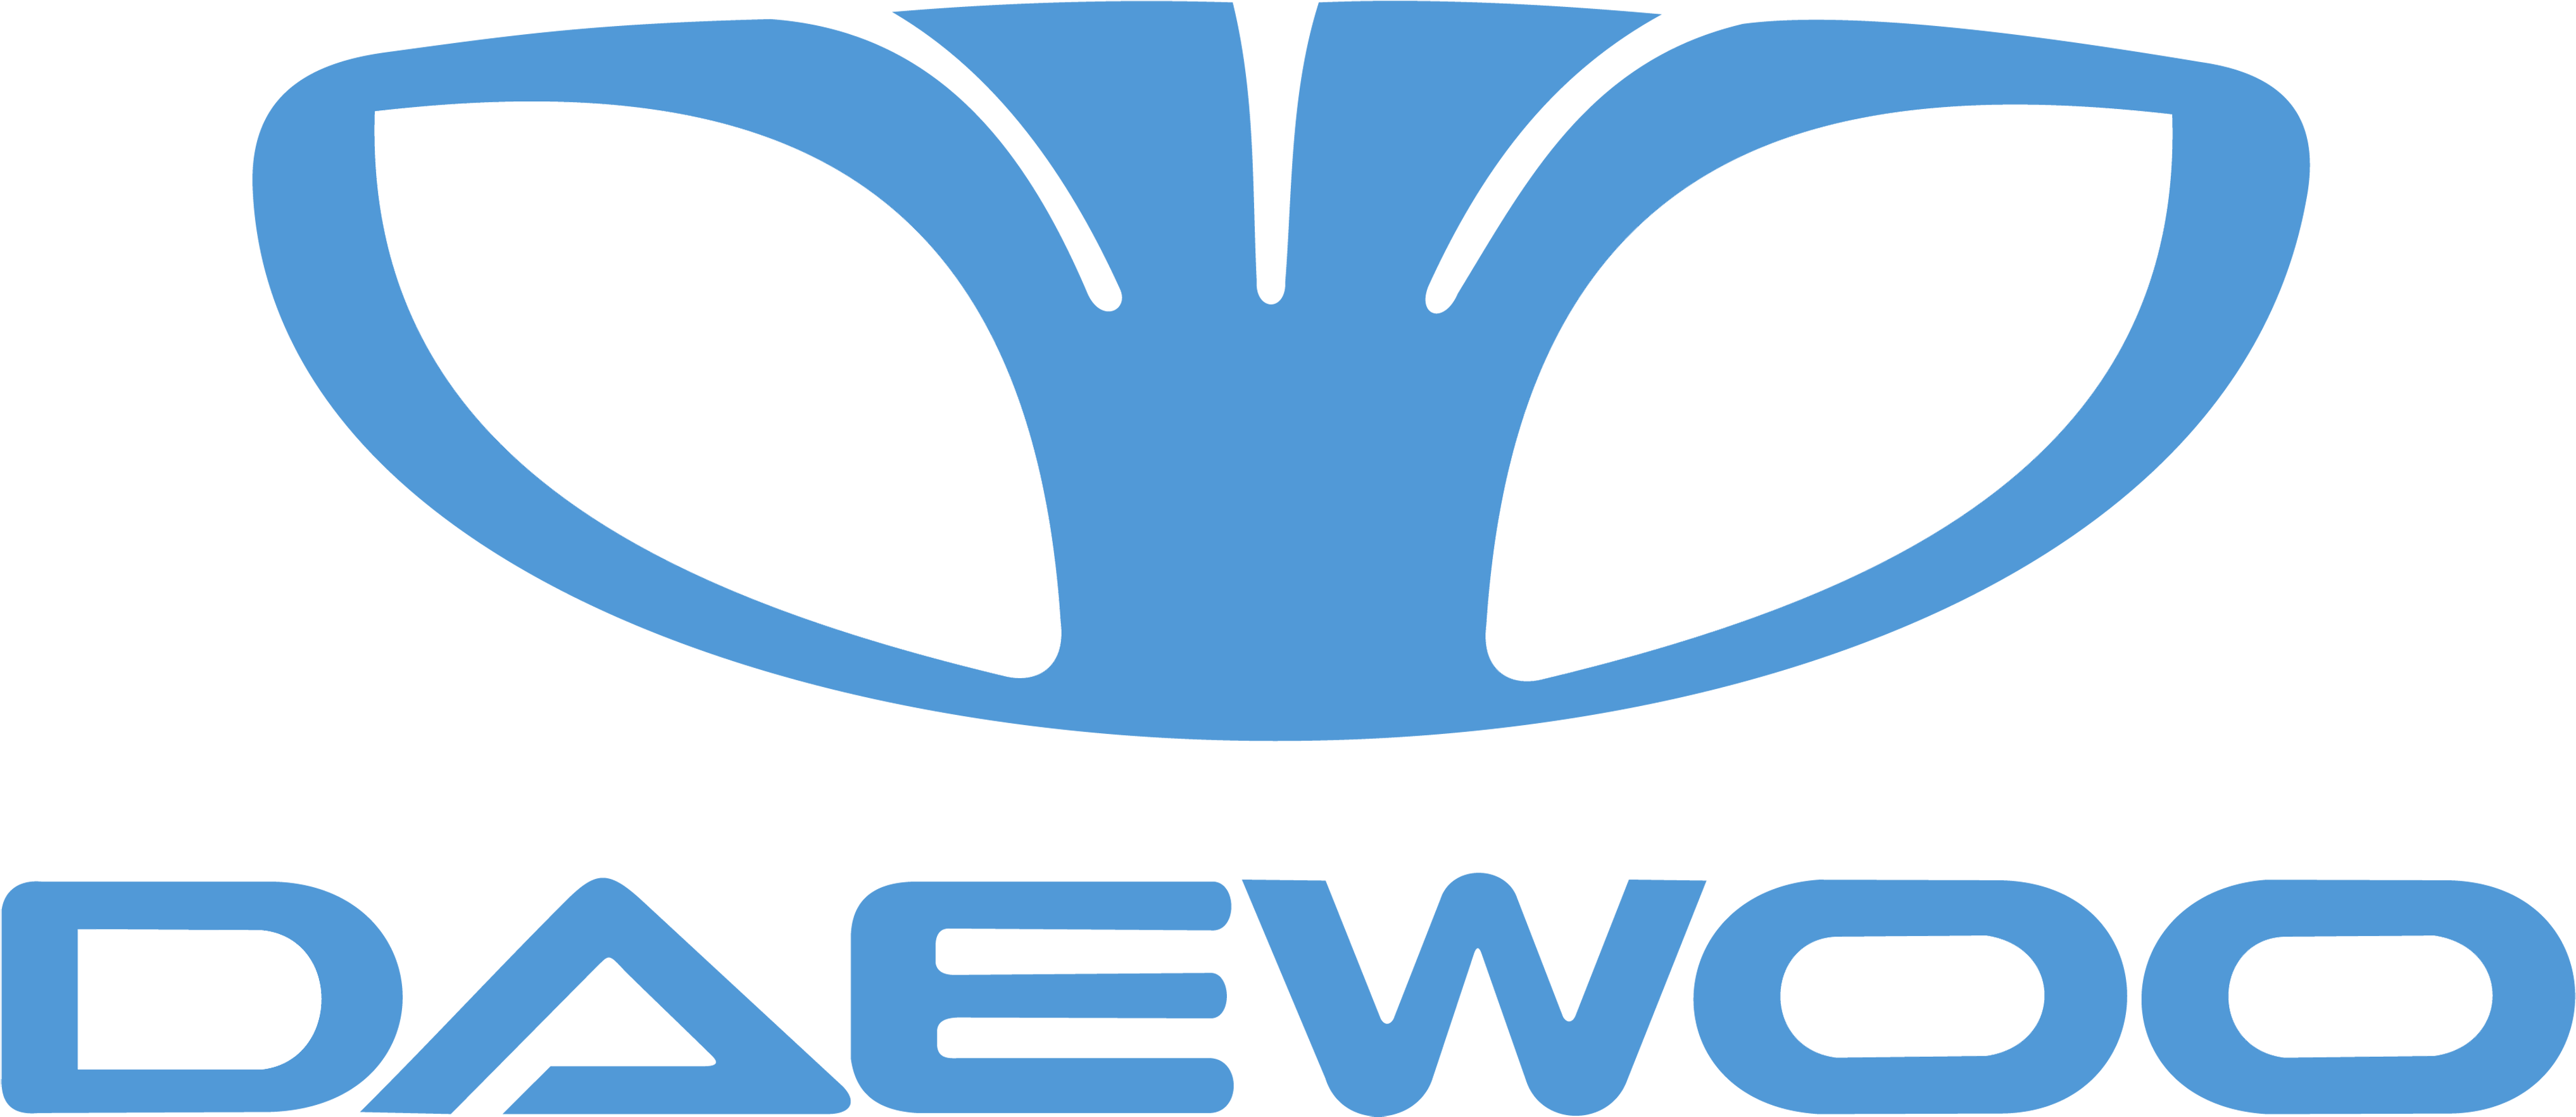 Daewoo Emblema - Daewoo Clipart (4128x2322), Png Download